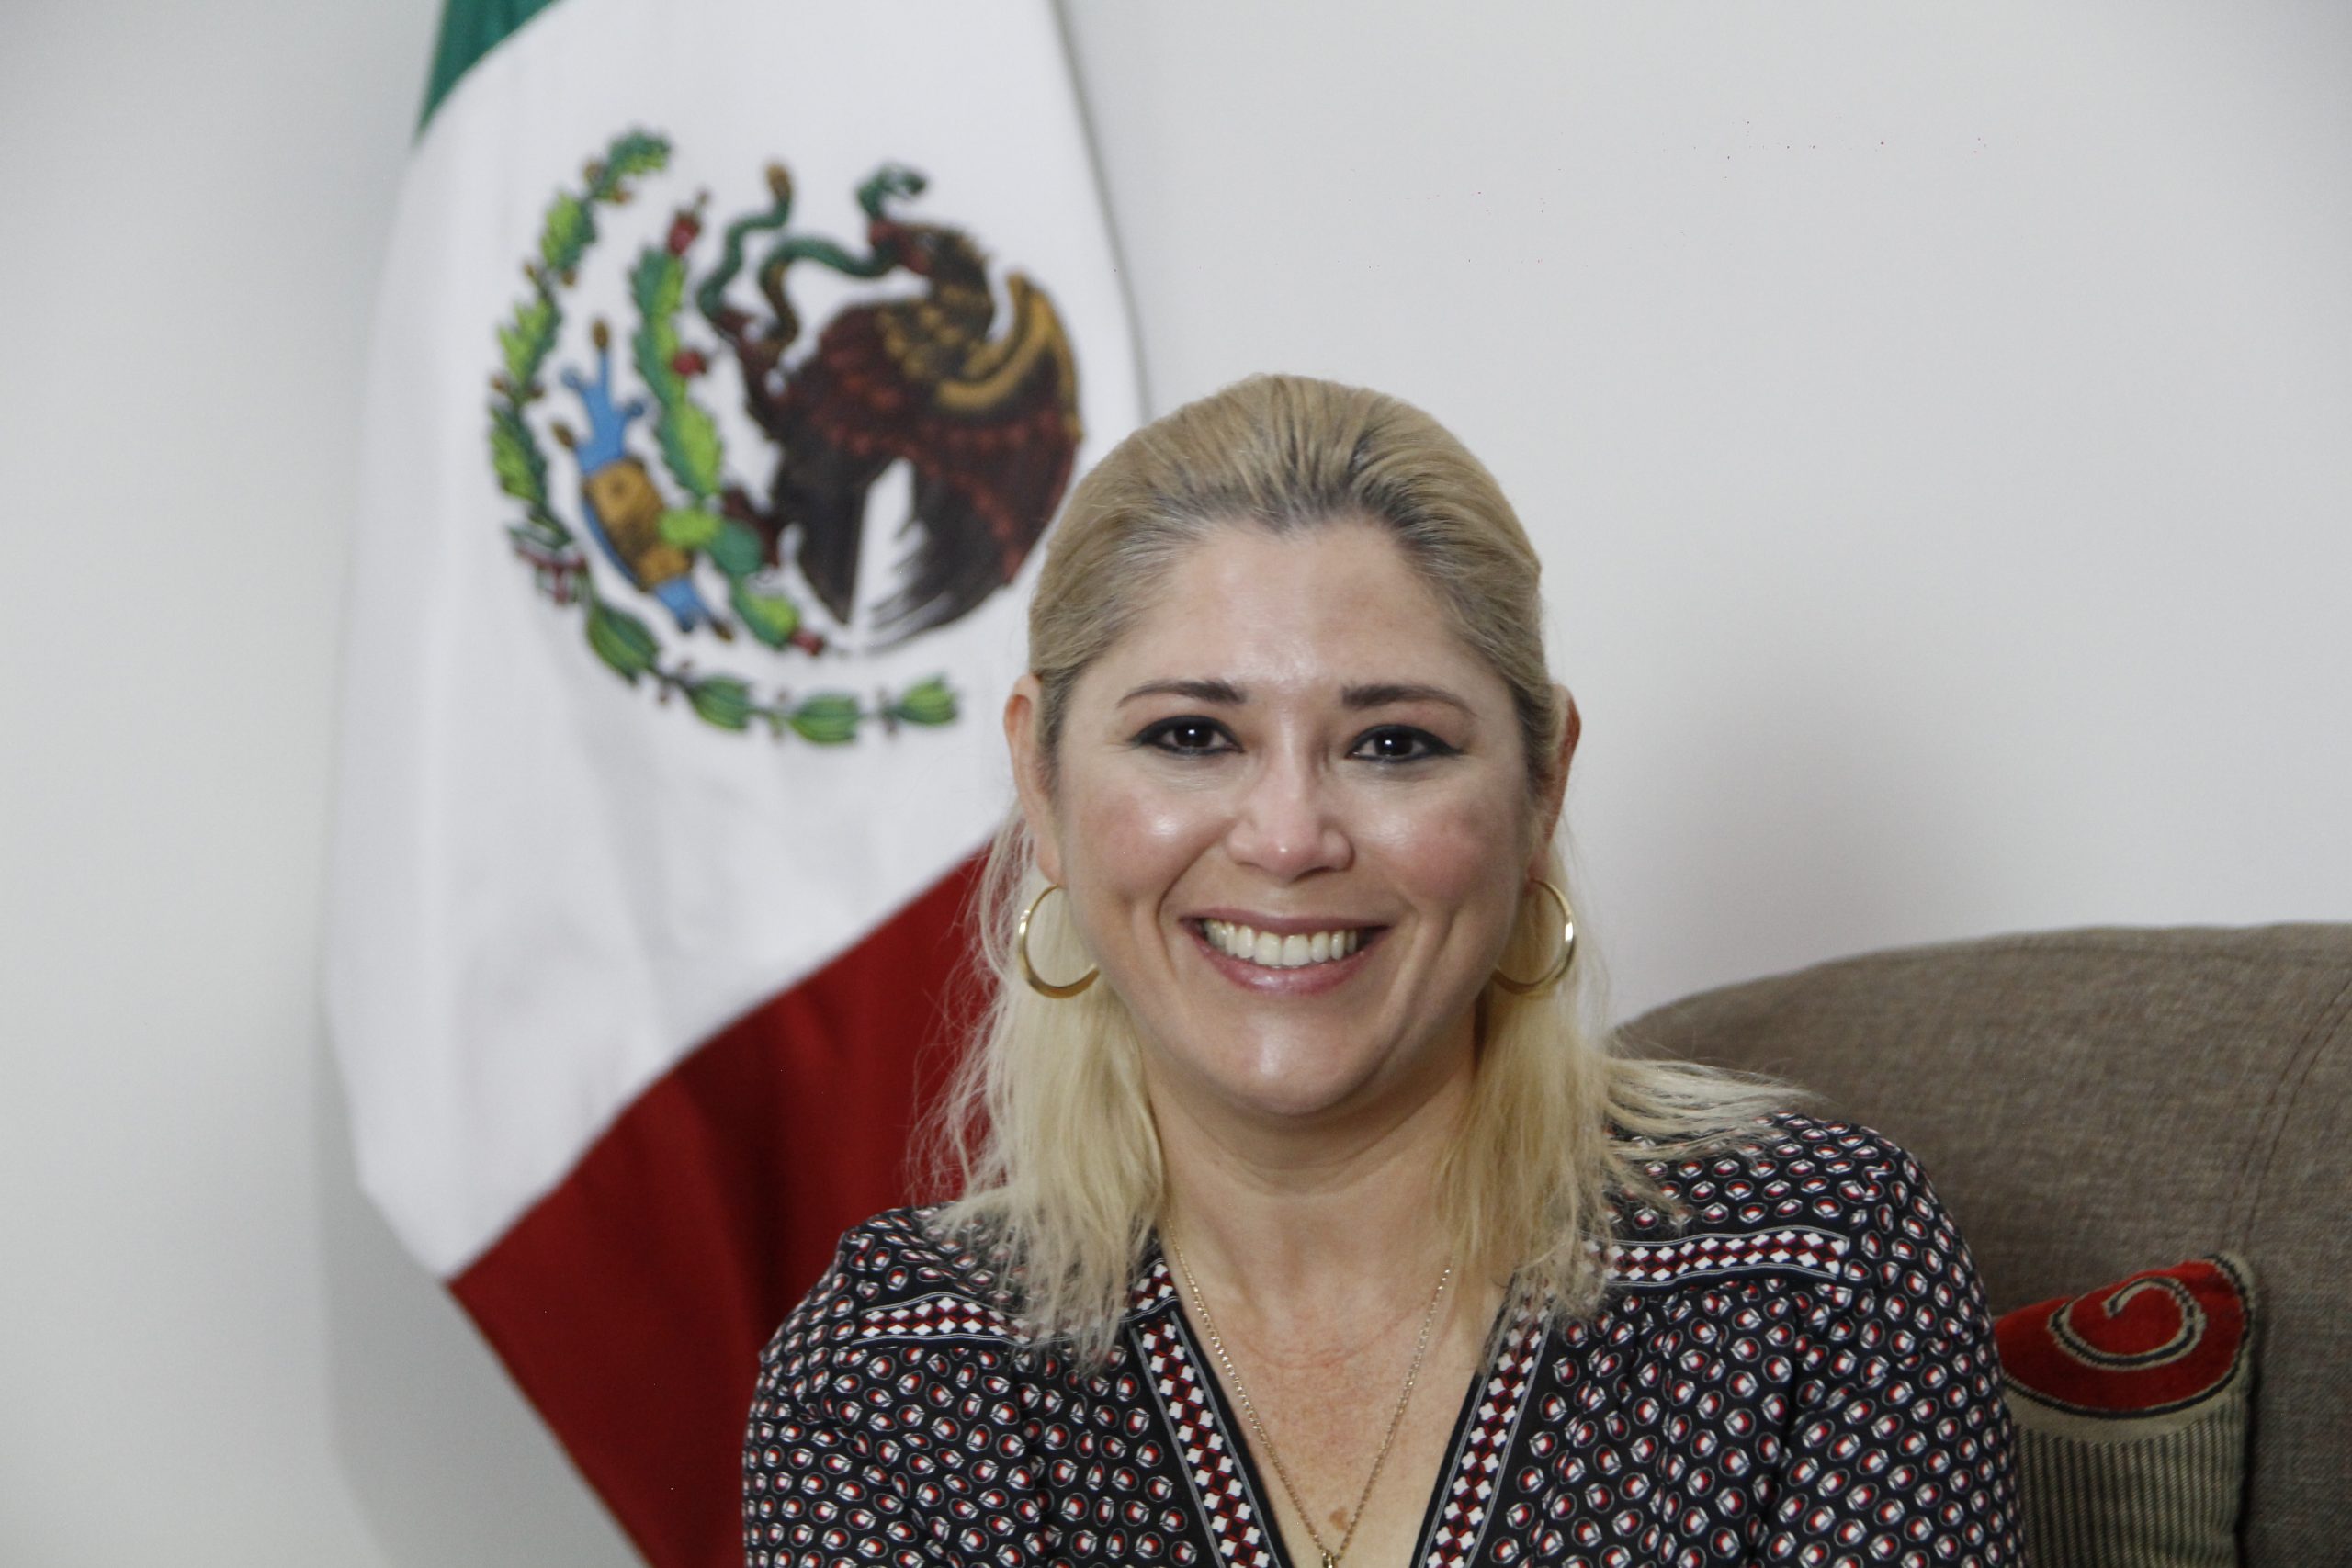 La Senadora Verónica Camino Farjat destaca la participación de la mujer en la política actual